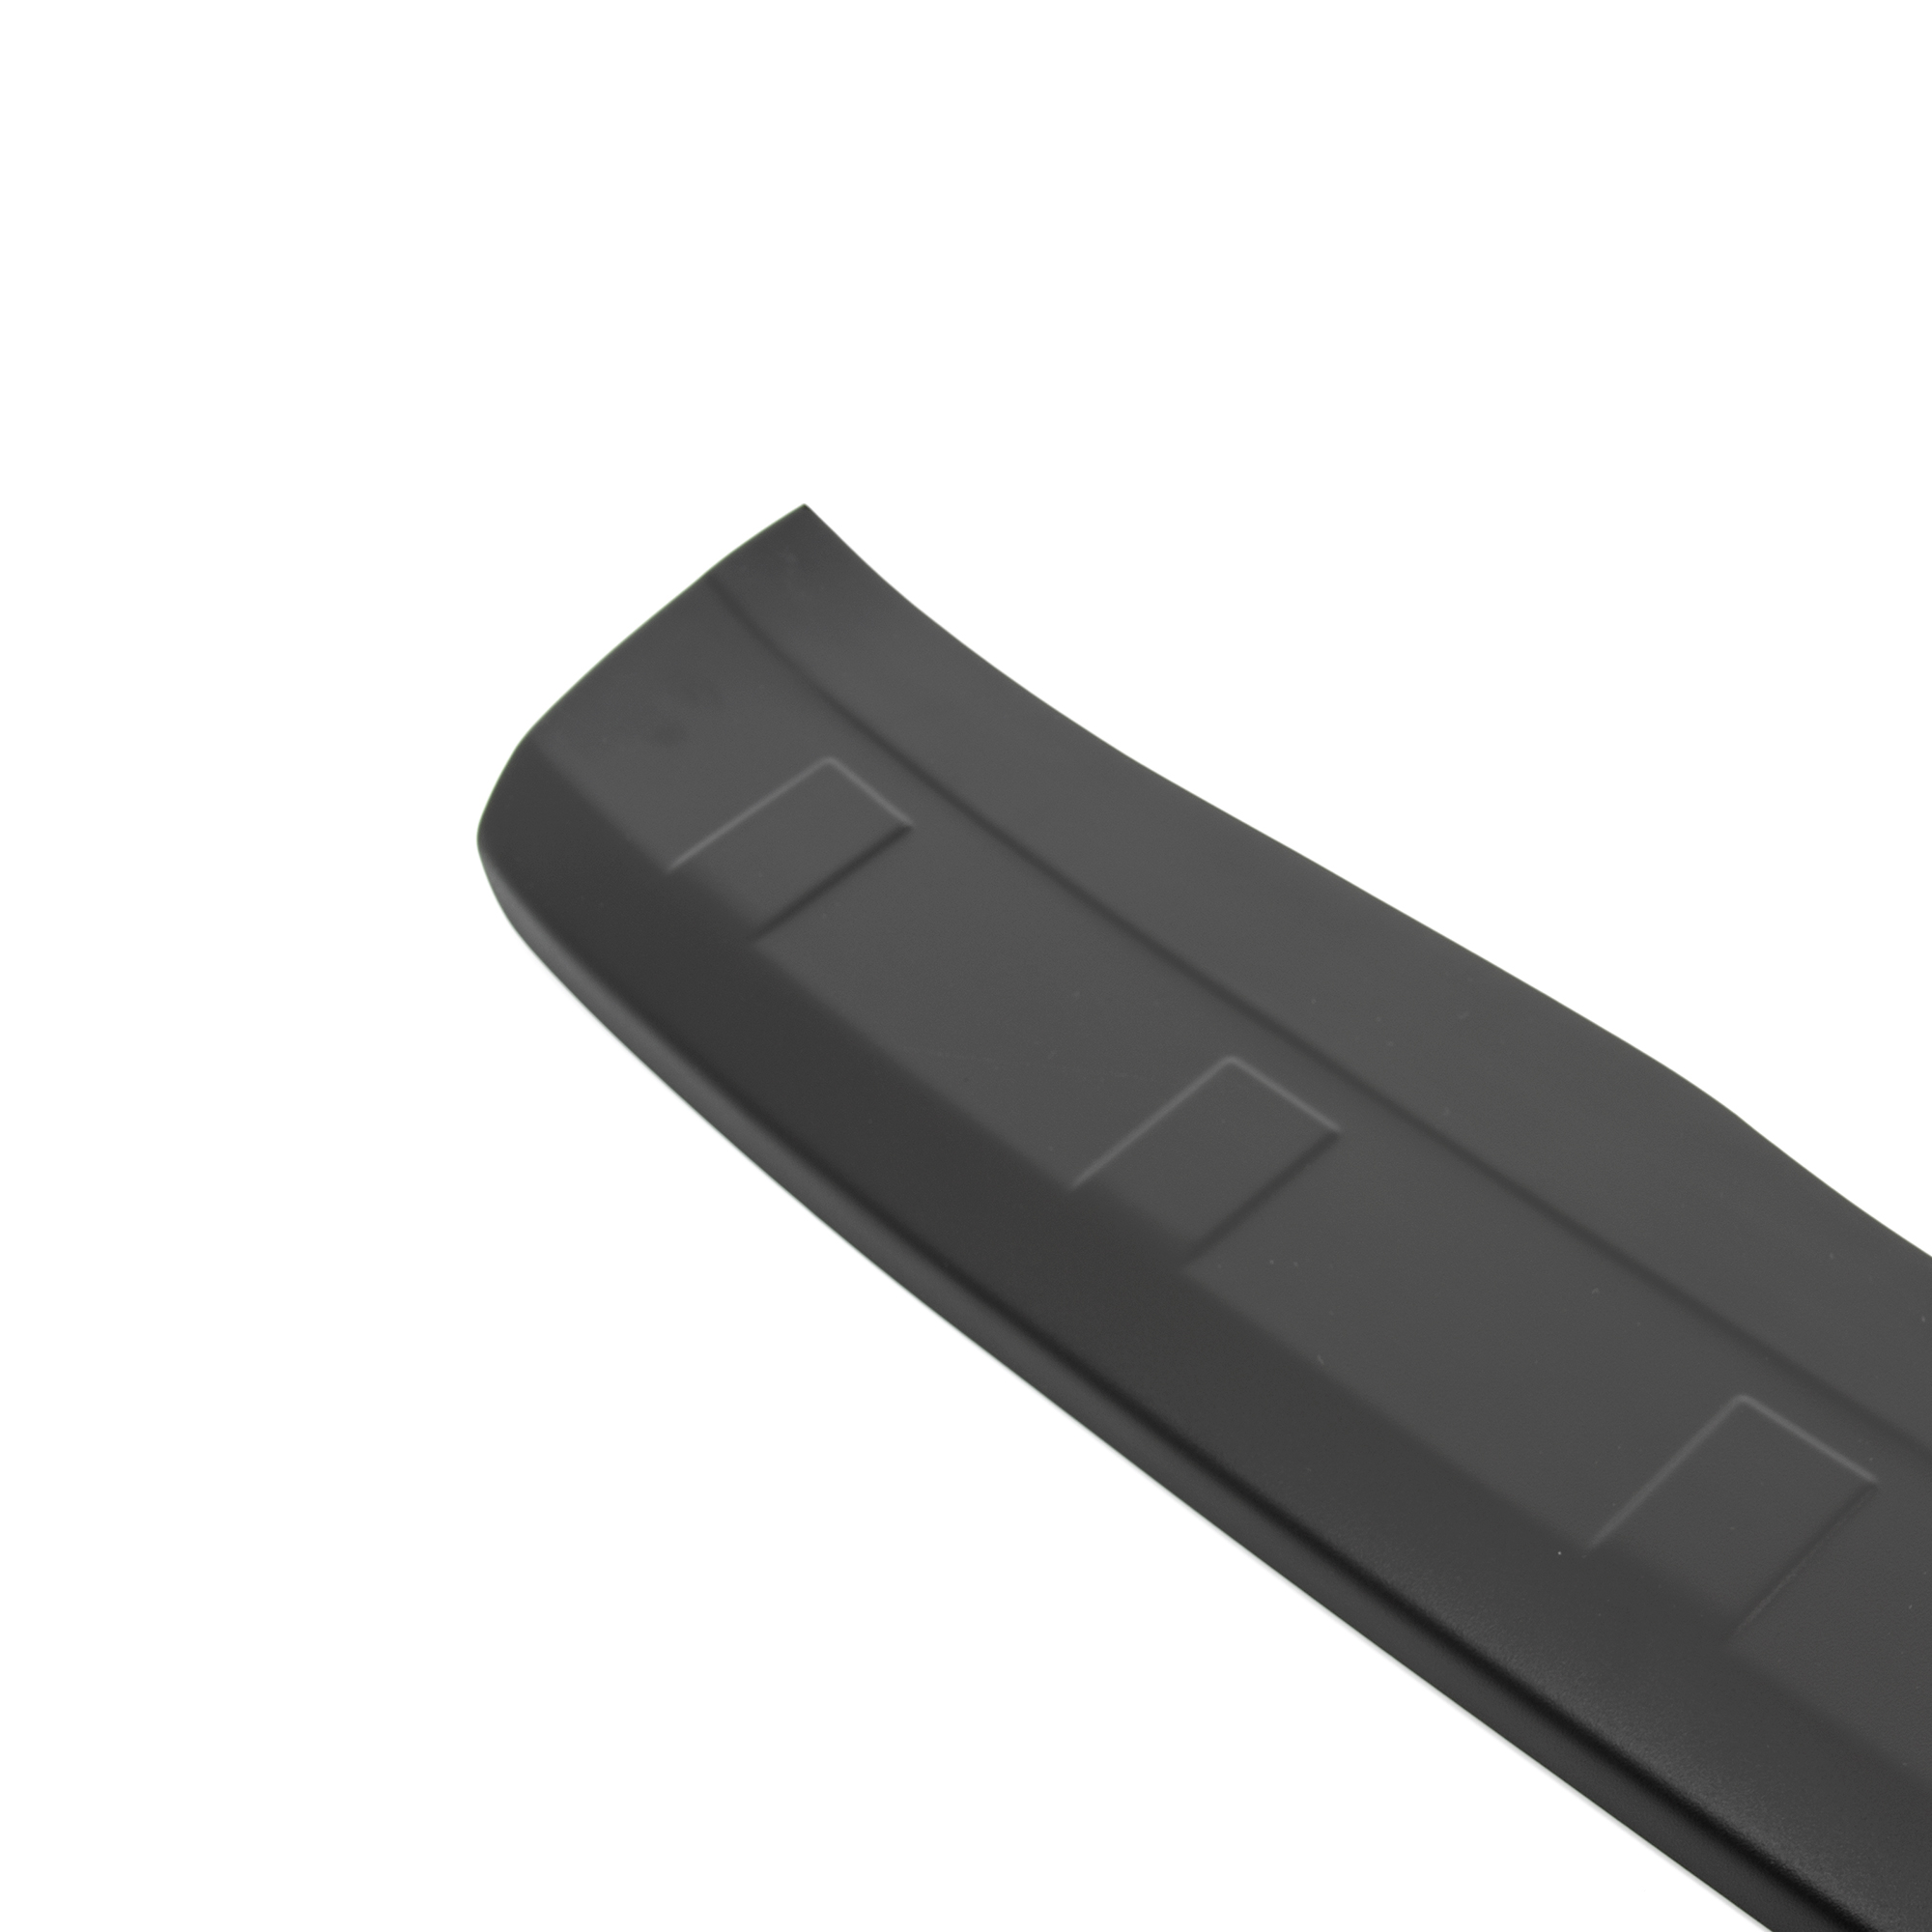 Ladekantenschutz mit Abkantung für Citroen BJ. Farbe Grand schwarz passend C4 | Picasso 10.2013> ab Sitzer ABS 7 Aroba (II.Generation)